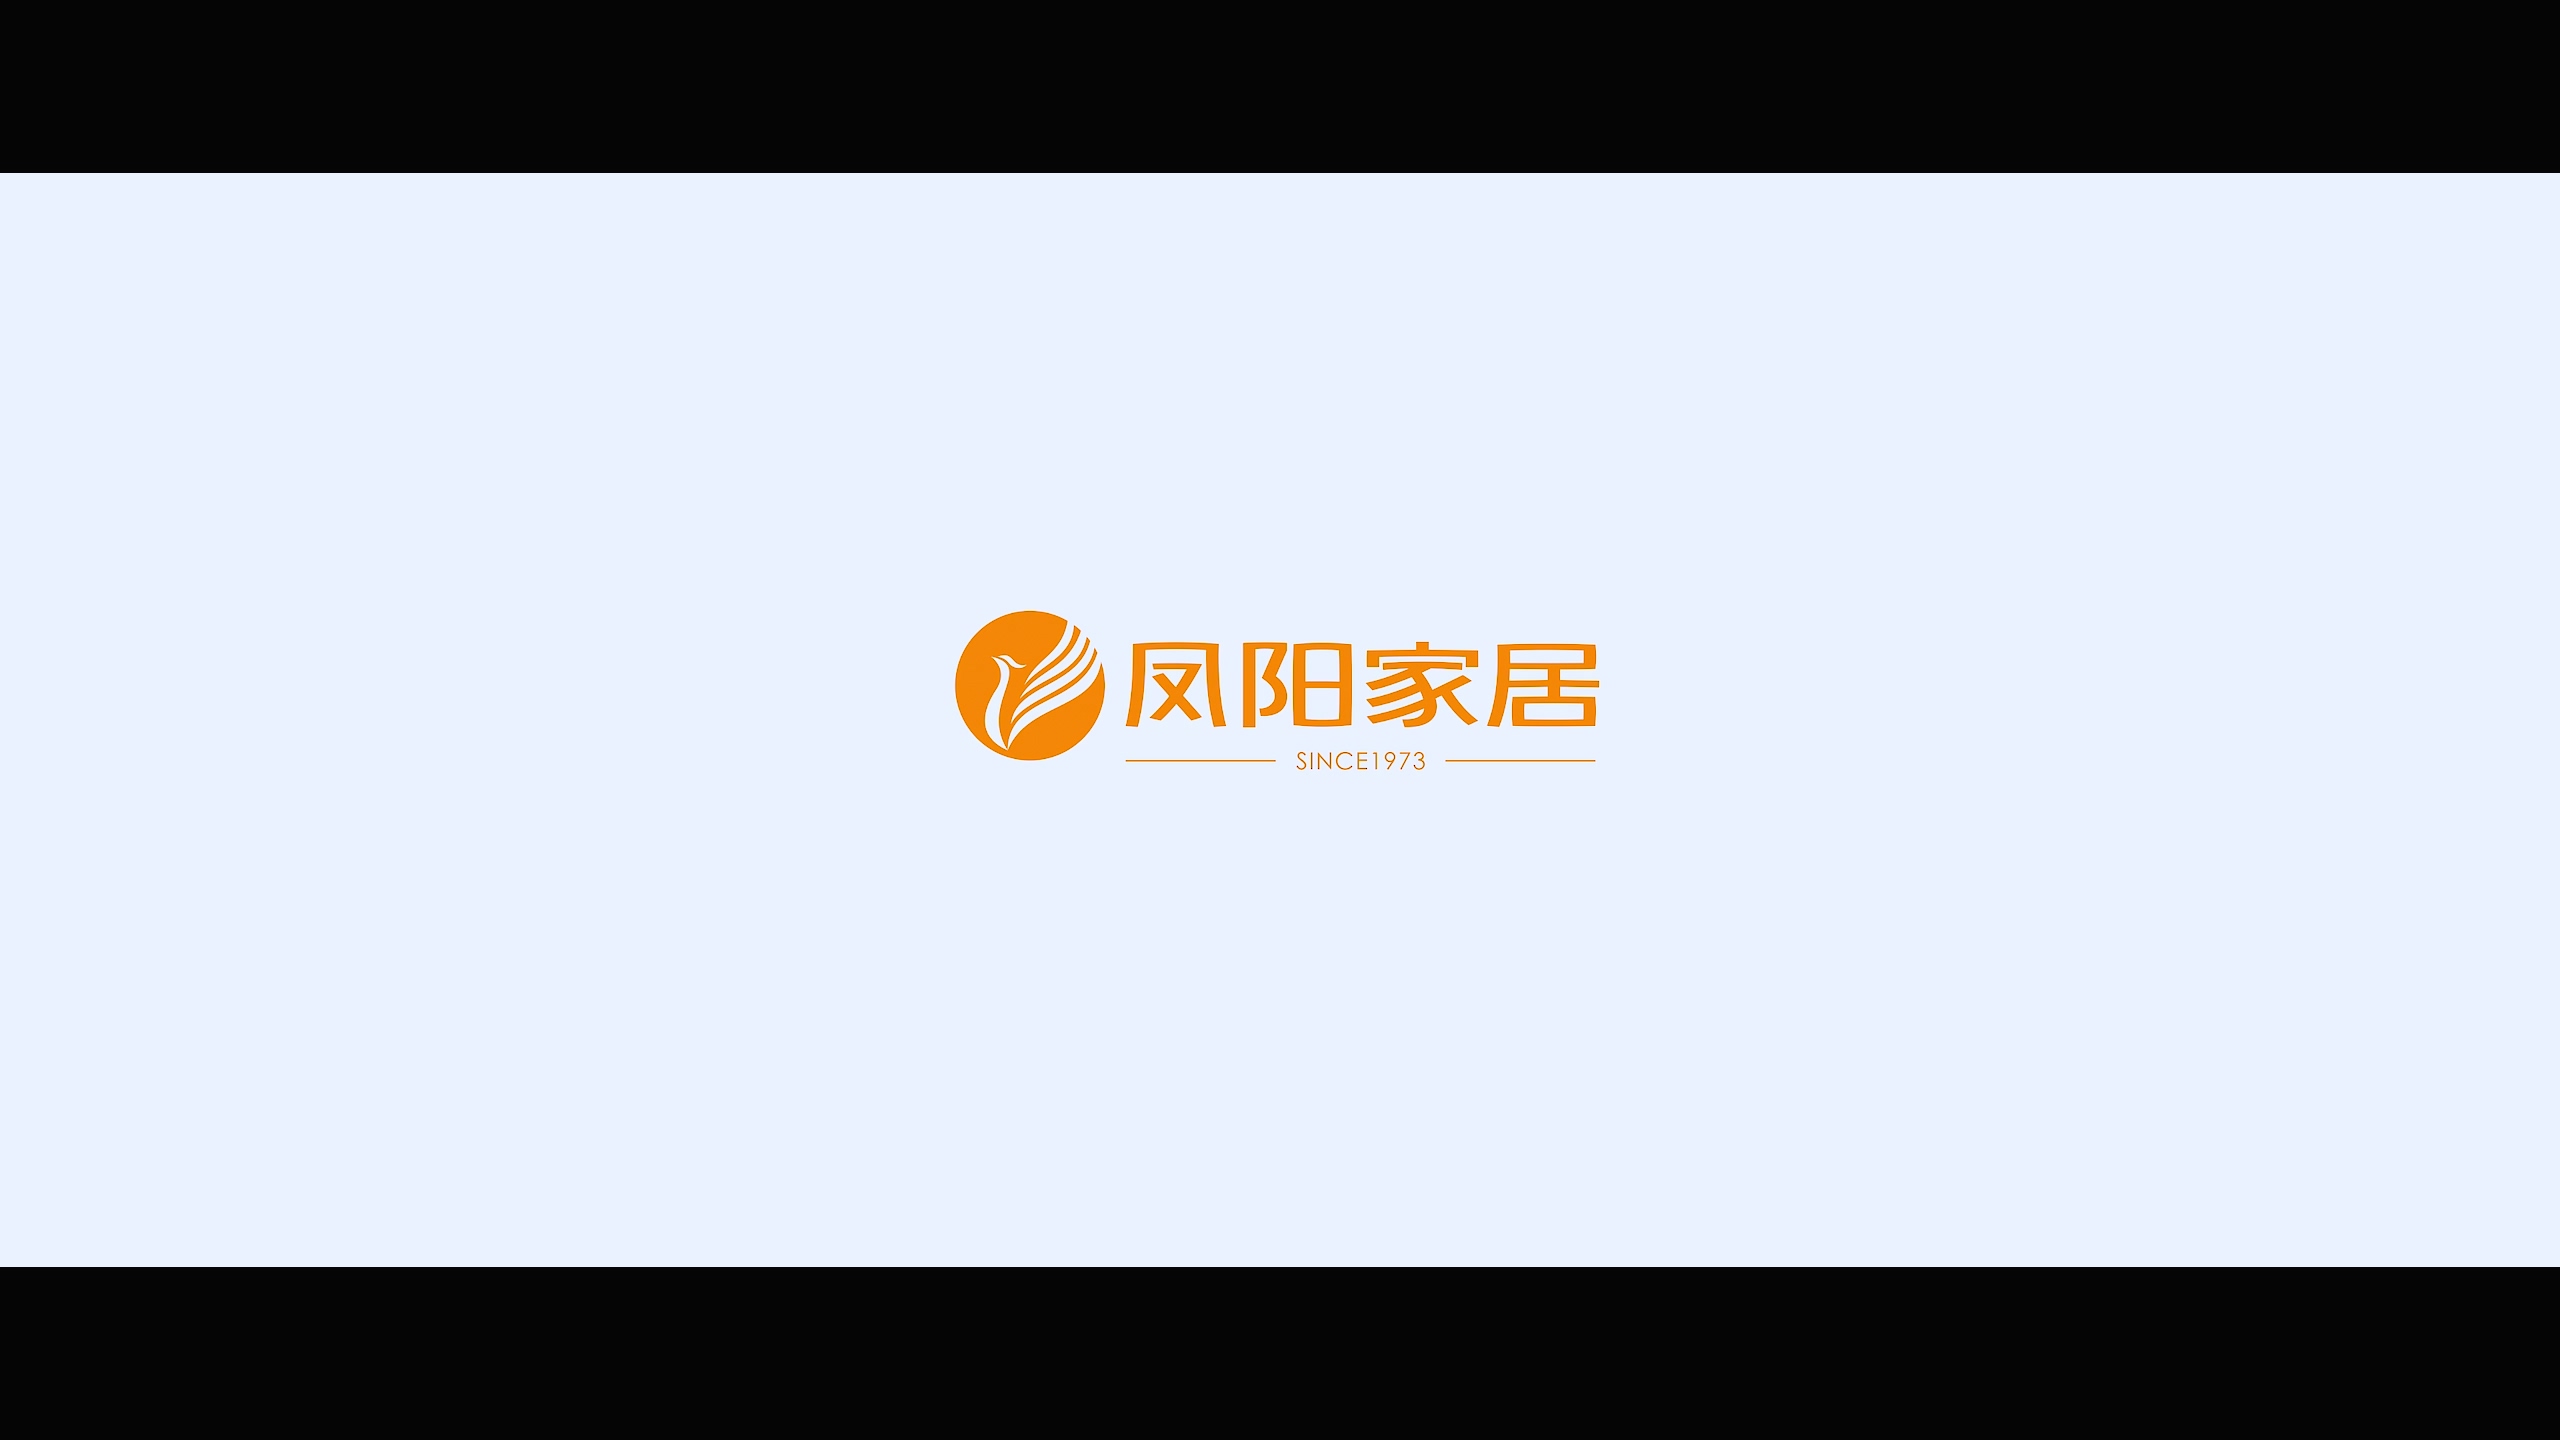 山東鳳陽家居有限公司企業宣傳片